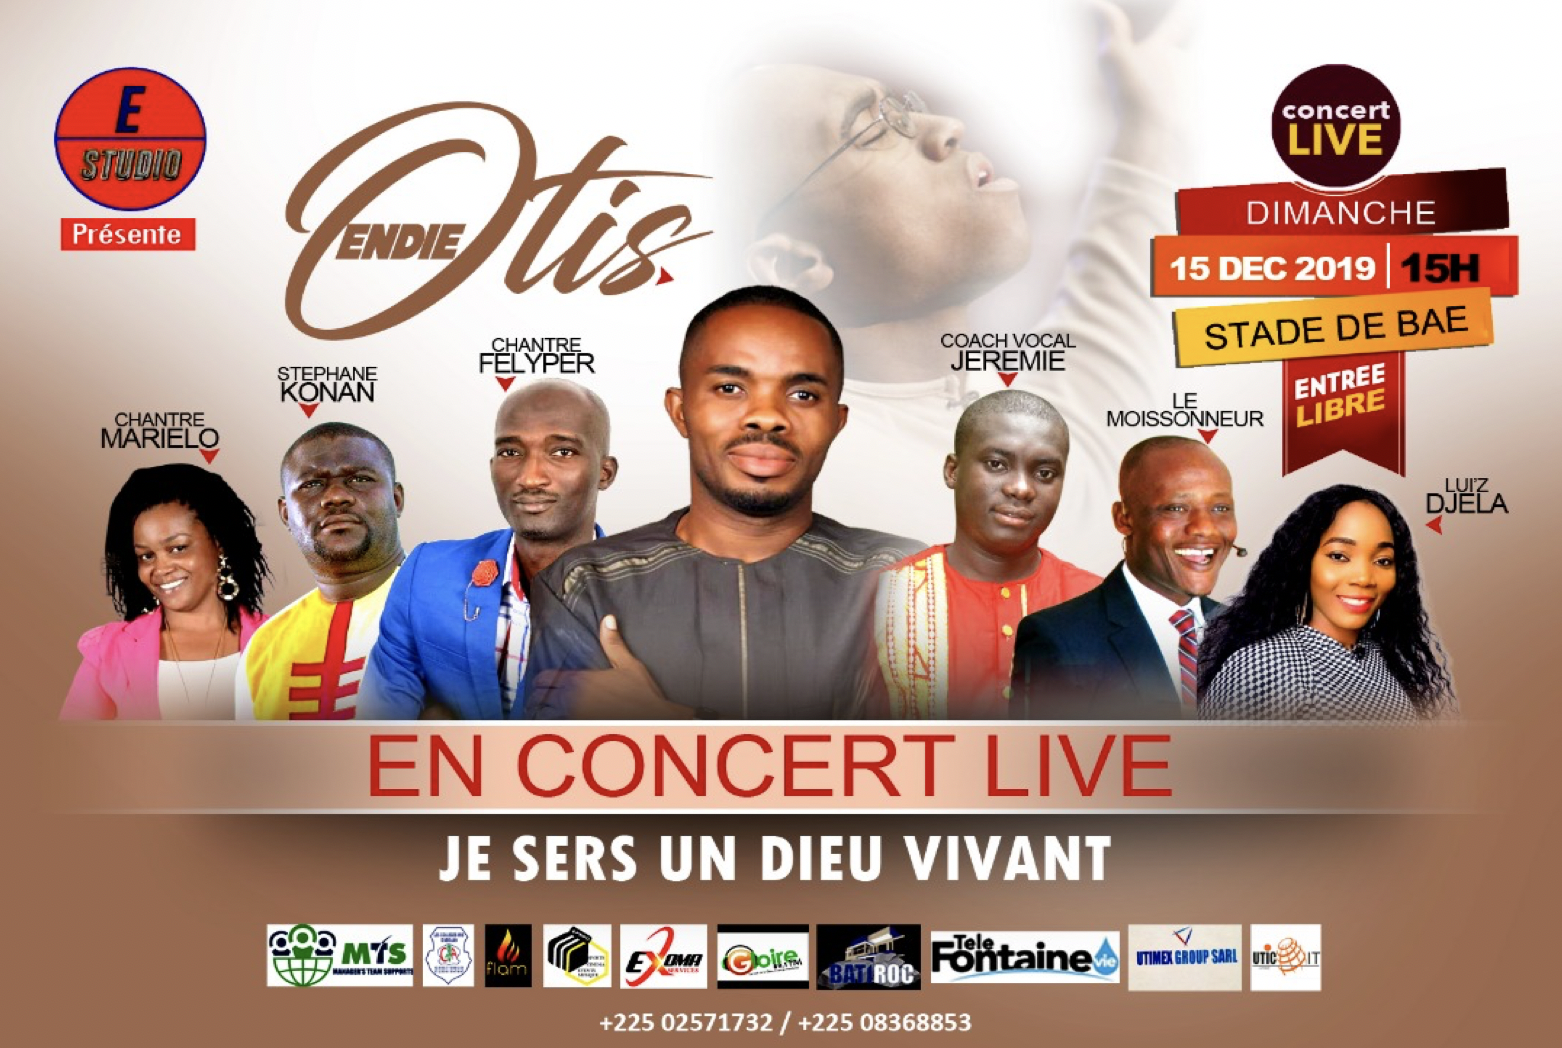 Les chrétiens de Côte d'Ivoire sont massivement invités au prochain concert d'Otis Endie Onyeani qui aura lieu le 15 décembre prochain à Yopougon, la plus grande commune d'Abidjan, la capitale économique ivoirienne.